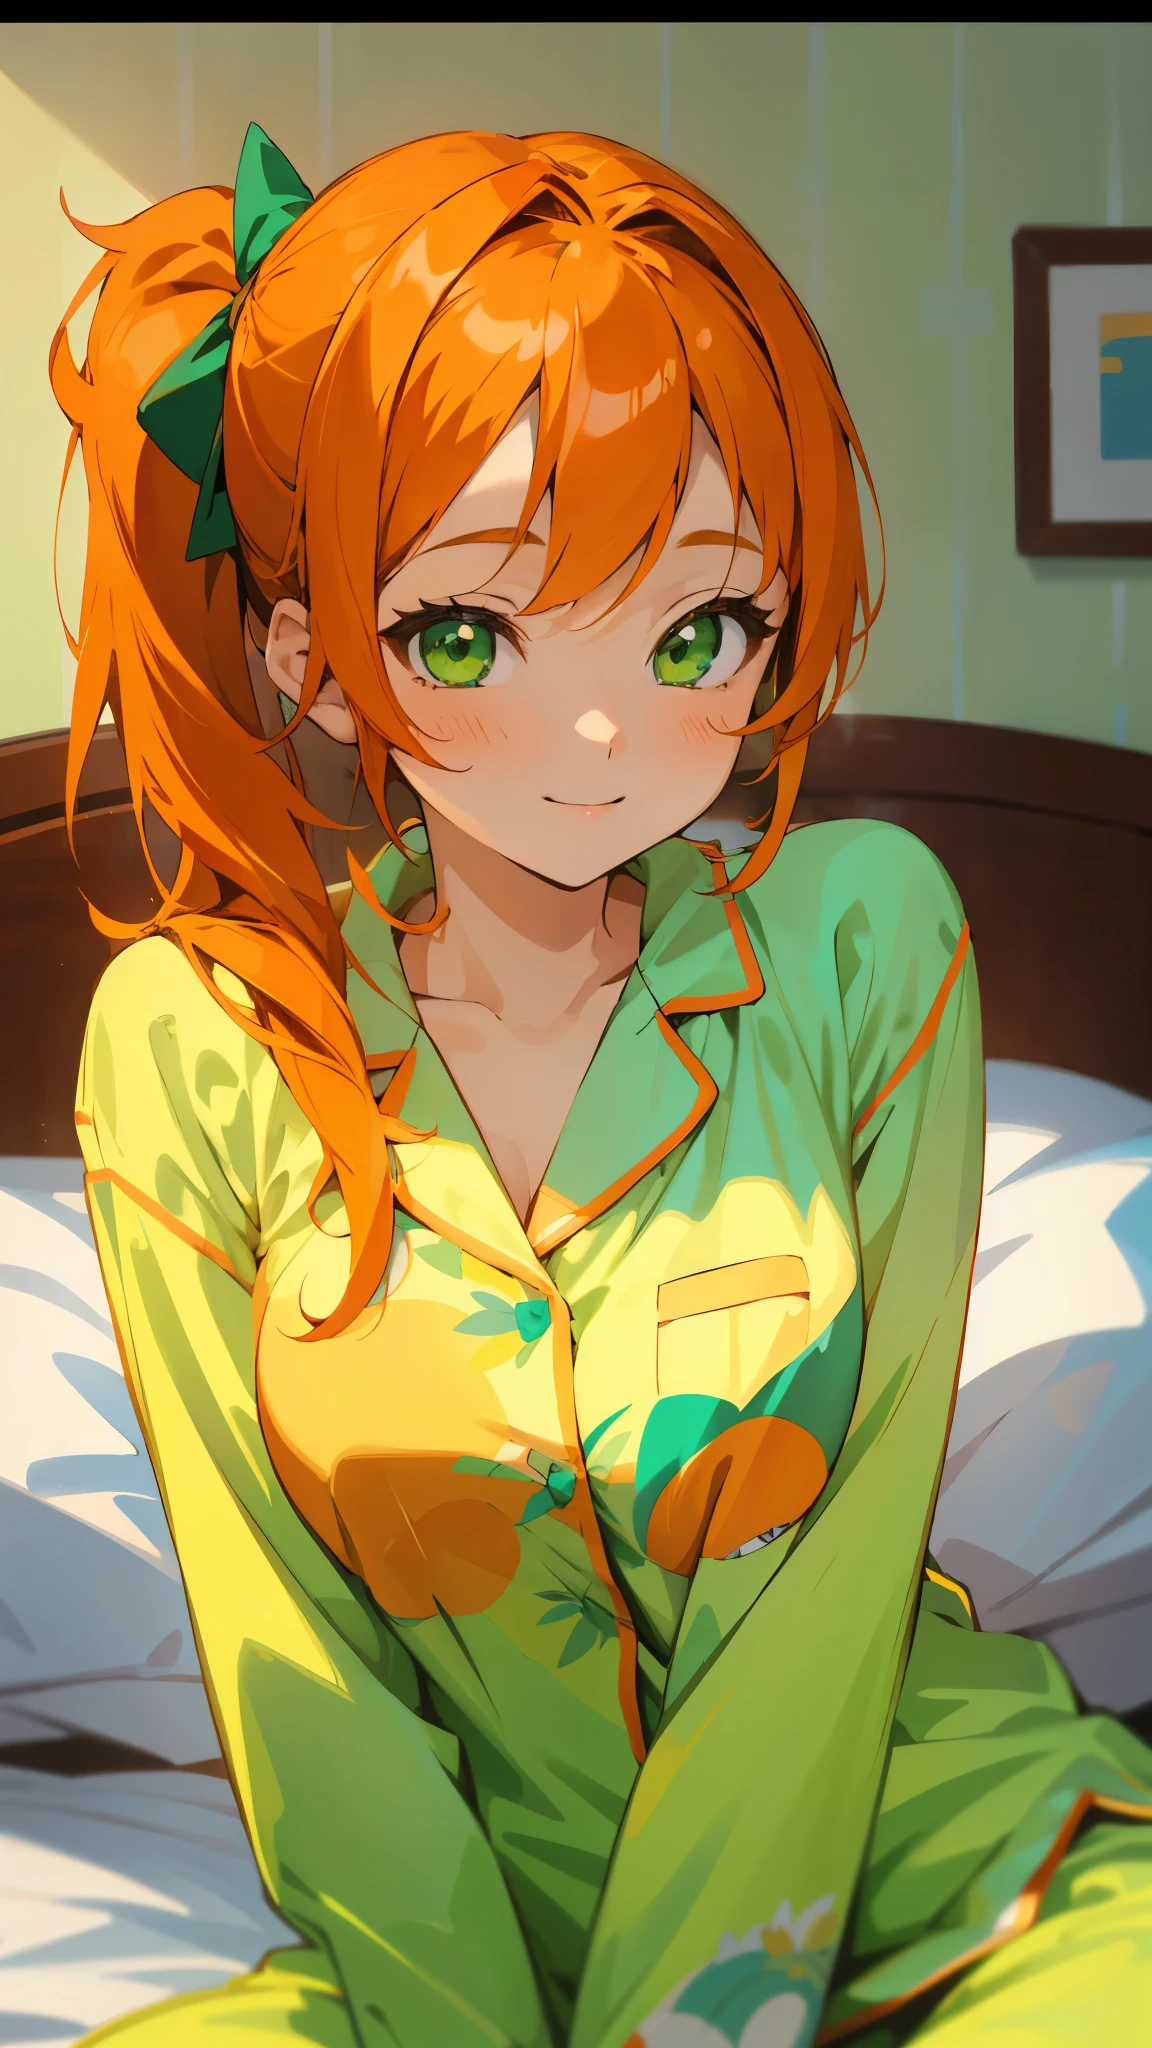 ベッドに座る18歳の少女、一人で、アニメ風の絵画、パジャマを着て、オレンジ色の髪、美しい緑の目、サイドポニーテール、笑顔、笑顔、パジャマの柔らかな風合い、上半身のクローズアップ、オレンジと緑の色、背景ぼかし、描画された境界線の深さ